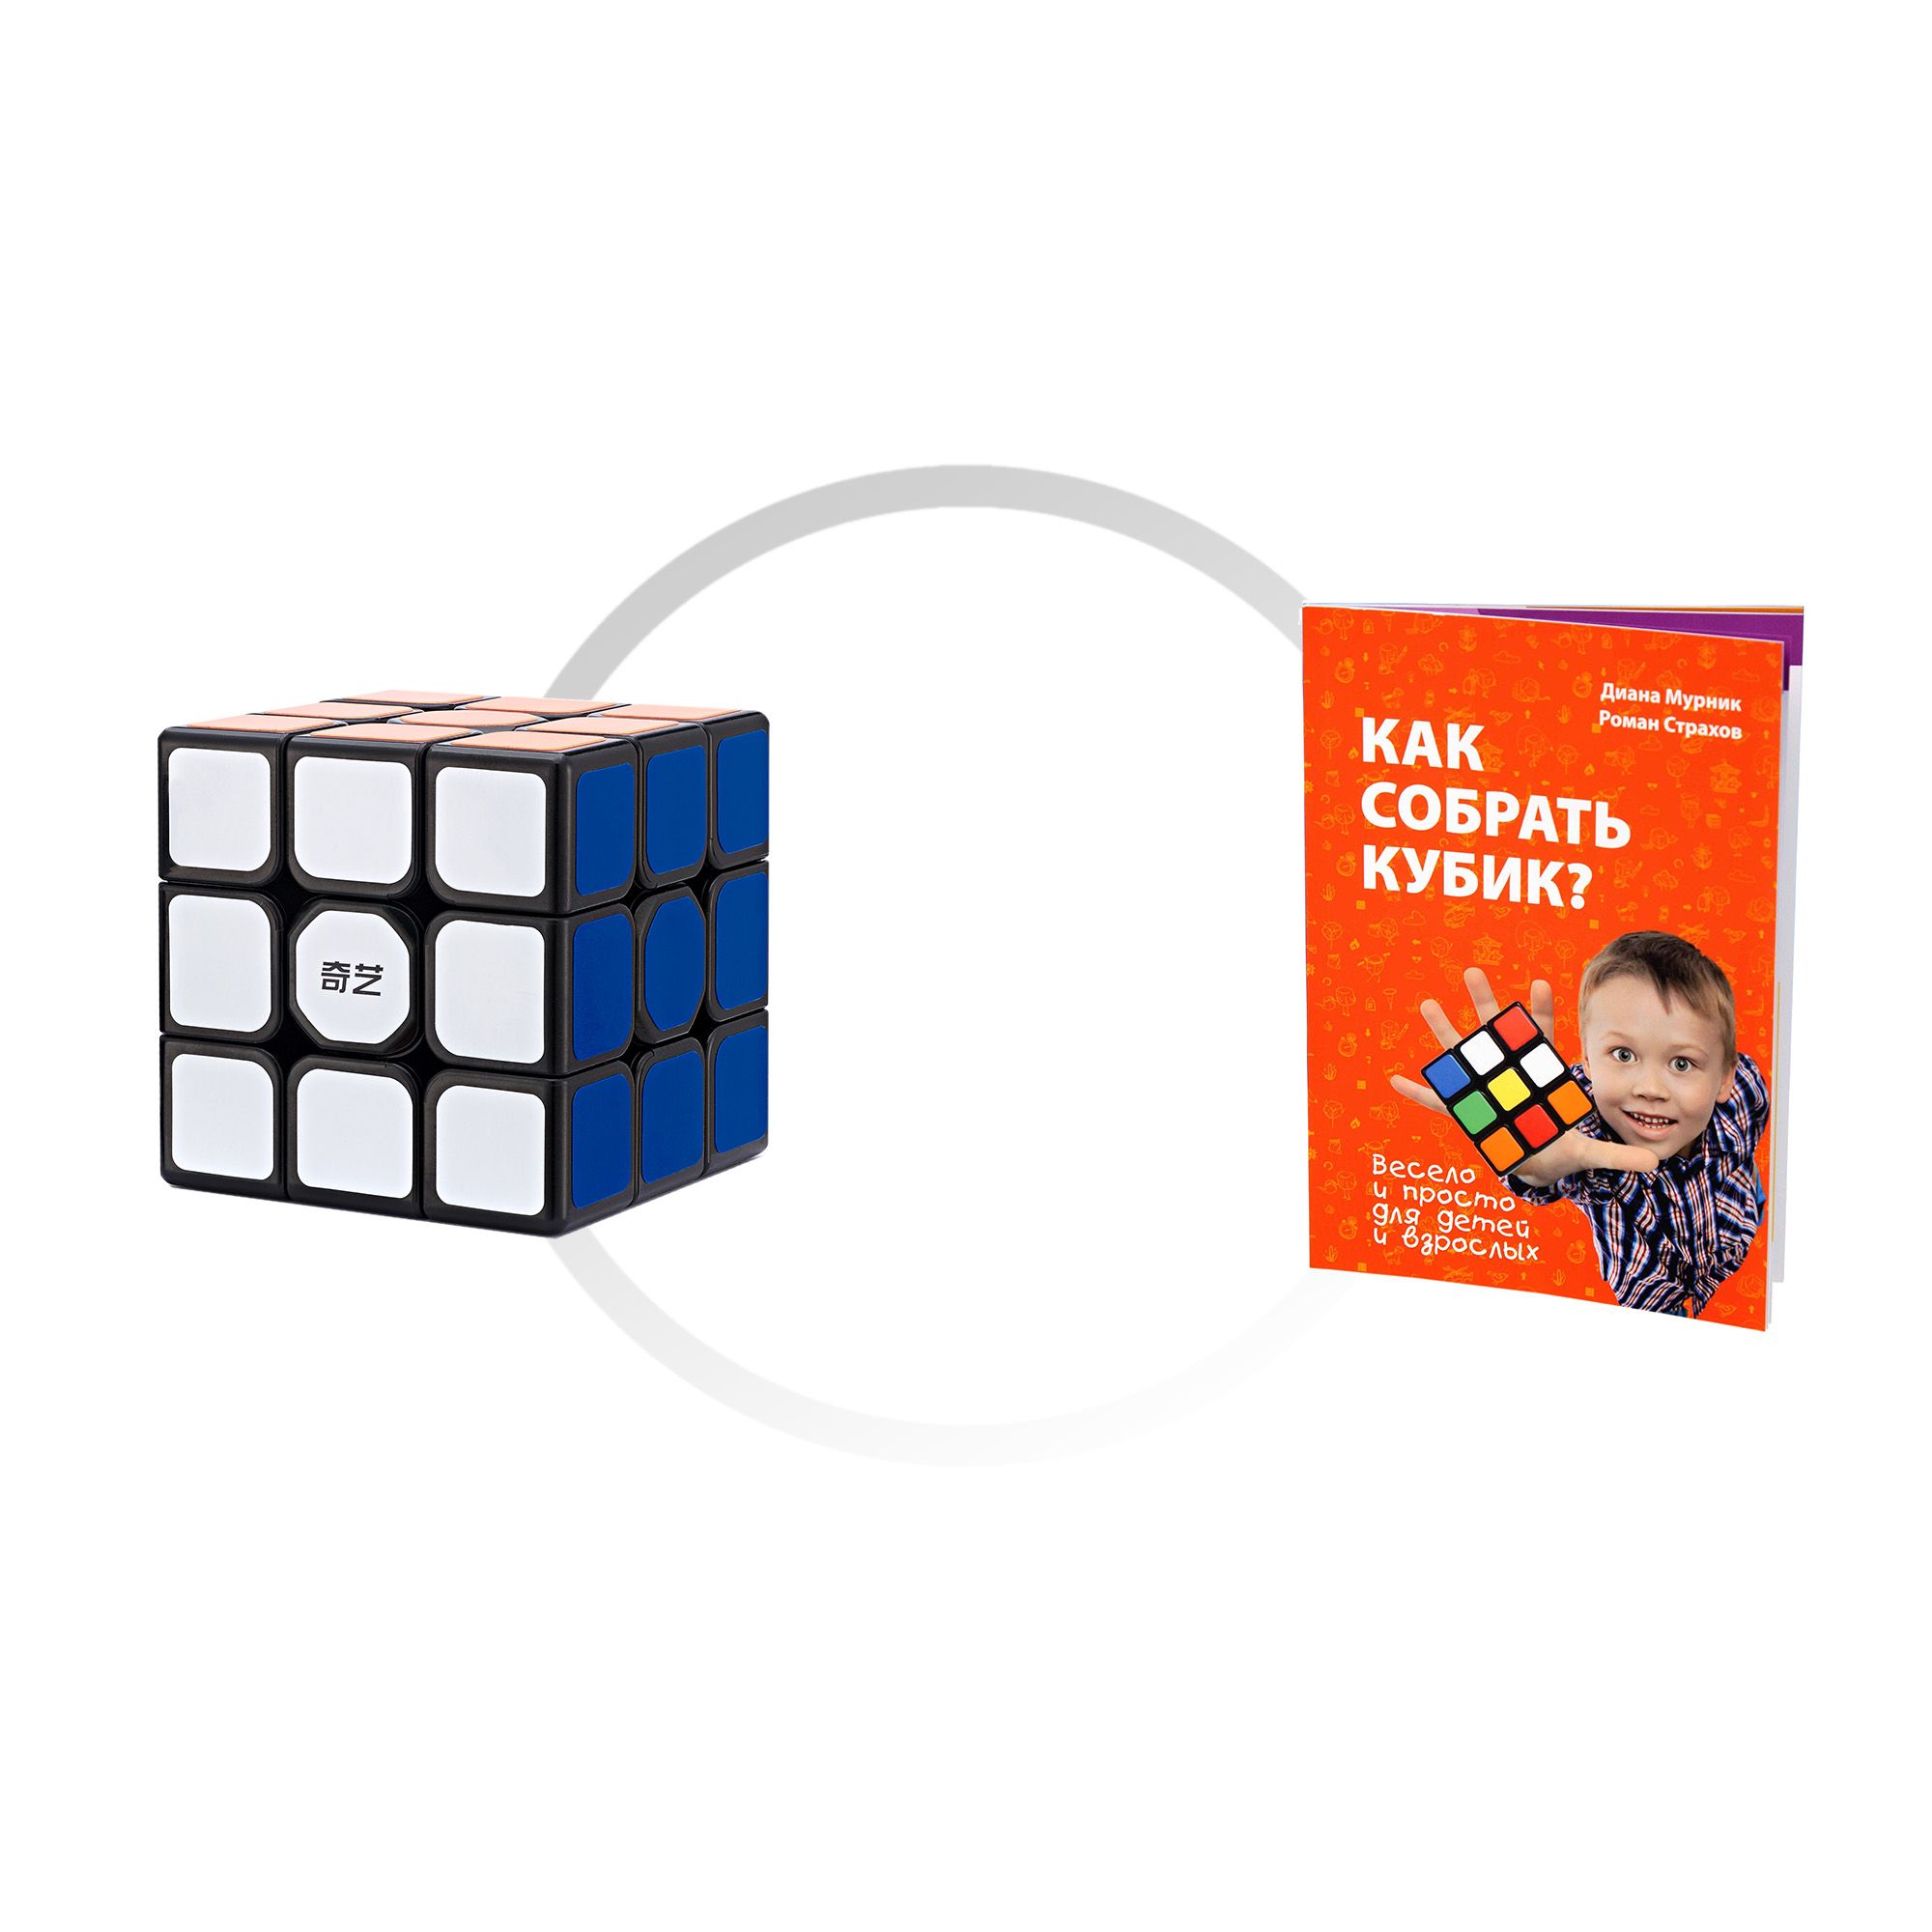 Комплект кубик Рубика для новичка QiYi MofangGe Sail W 3x3x3 + книга Как собрать кубик? linux от новичка к профессионалу в подлиннике